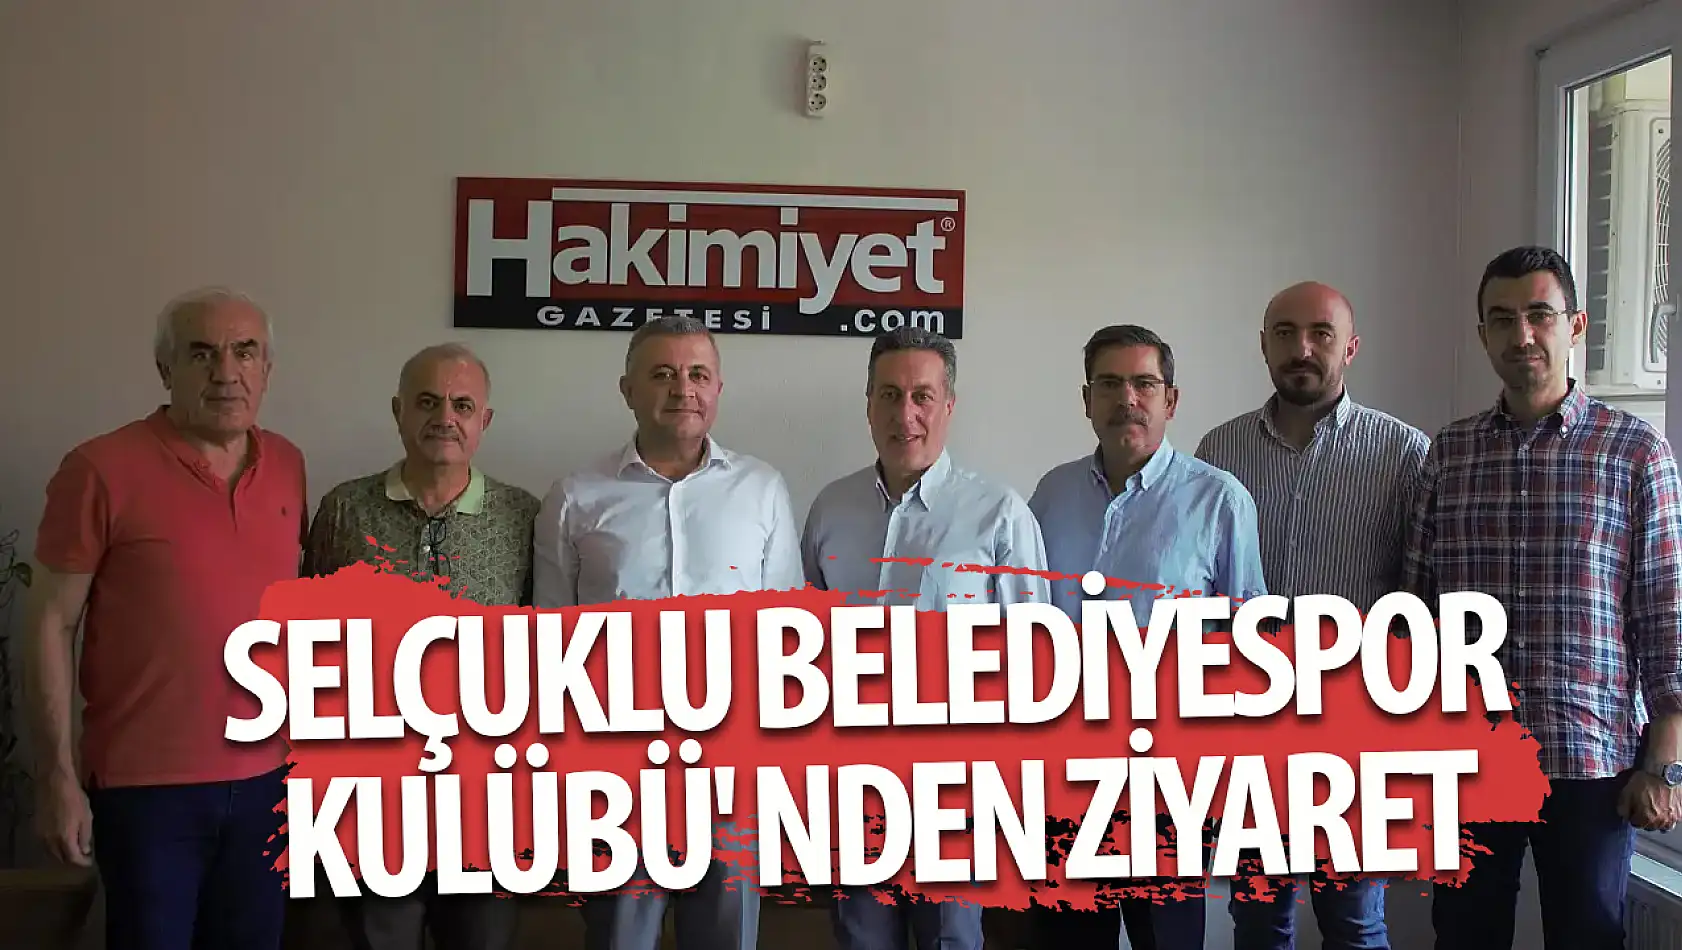 Selçuklu Belediyespor Kulübü' nden Hakimiyet Gazetesi' ne ziyaret